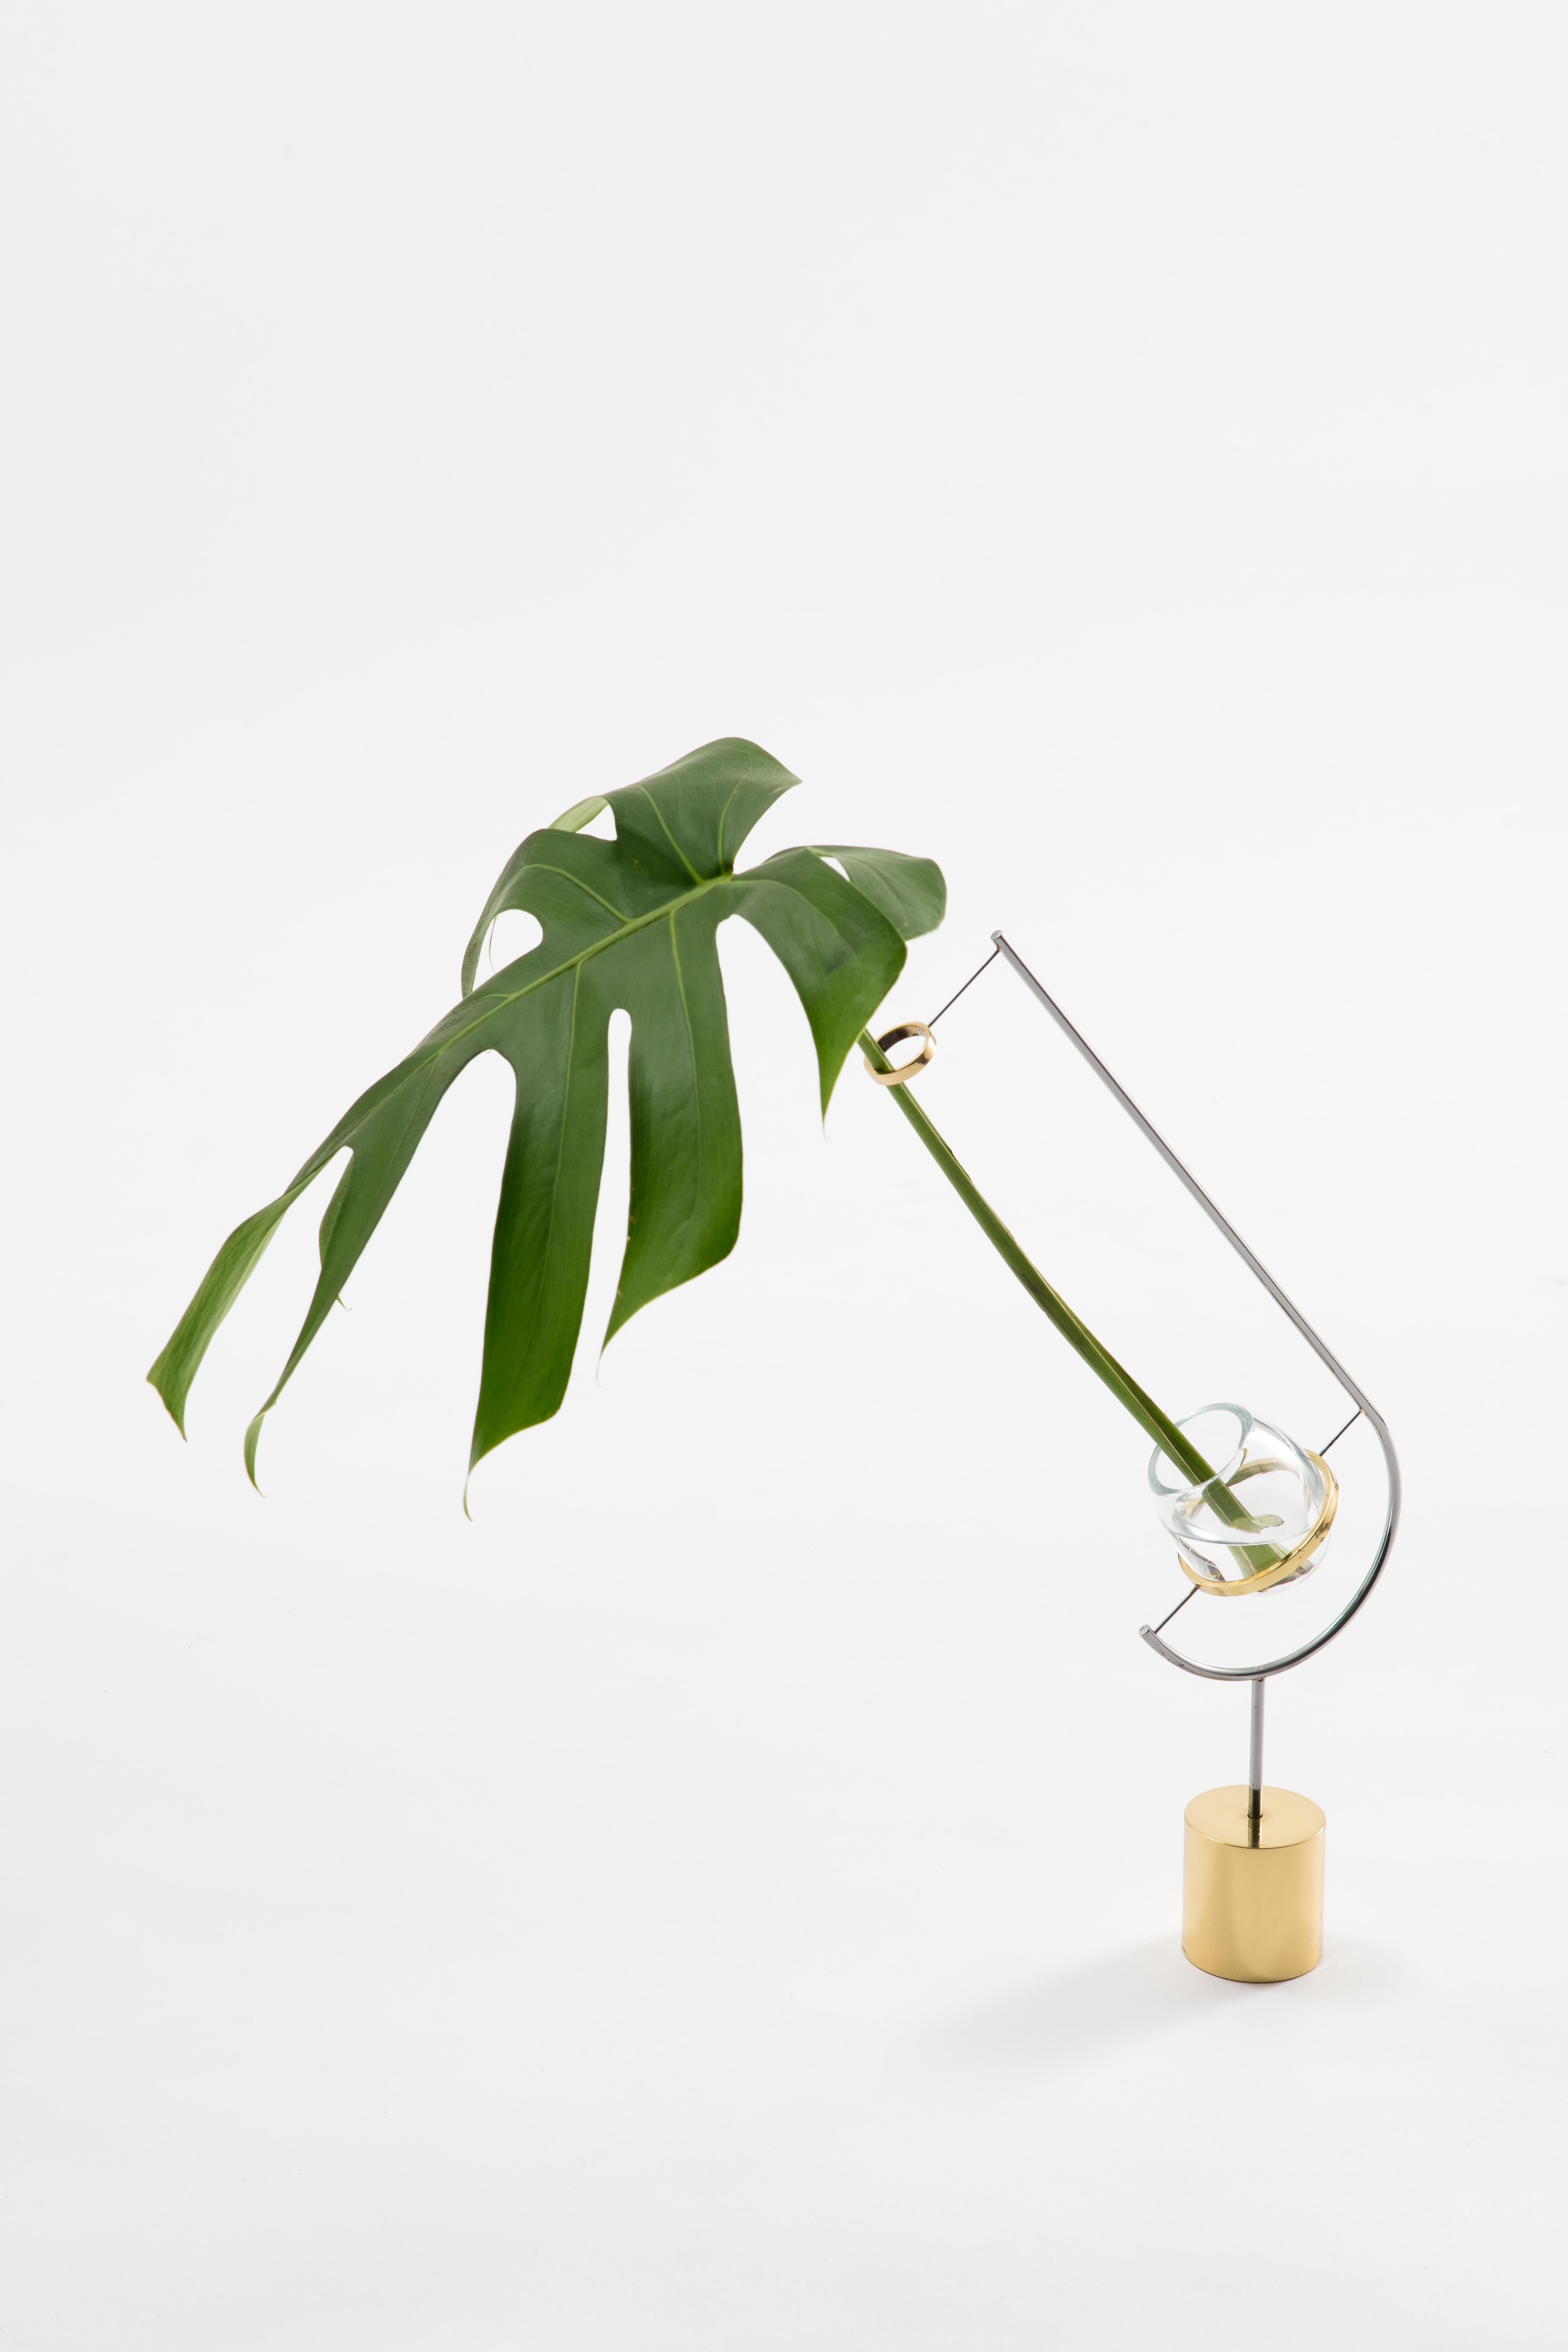 Le vase V3 - Monstera de Paulo Goldstein, design contemporain brésilien, fait partie d'une série de vases inspirés par l'observation des lignes naturelles des fleurs et des feuilles qu'ils contiennent. Les lignes des vases ont été conçues pour